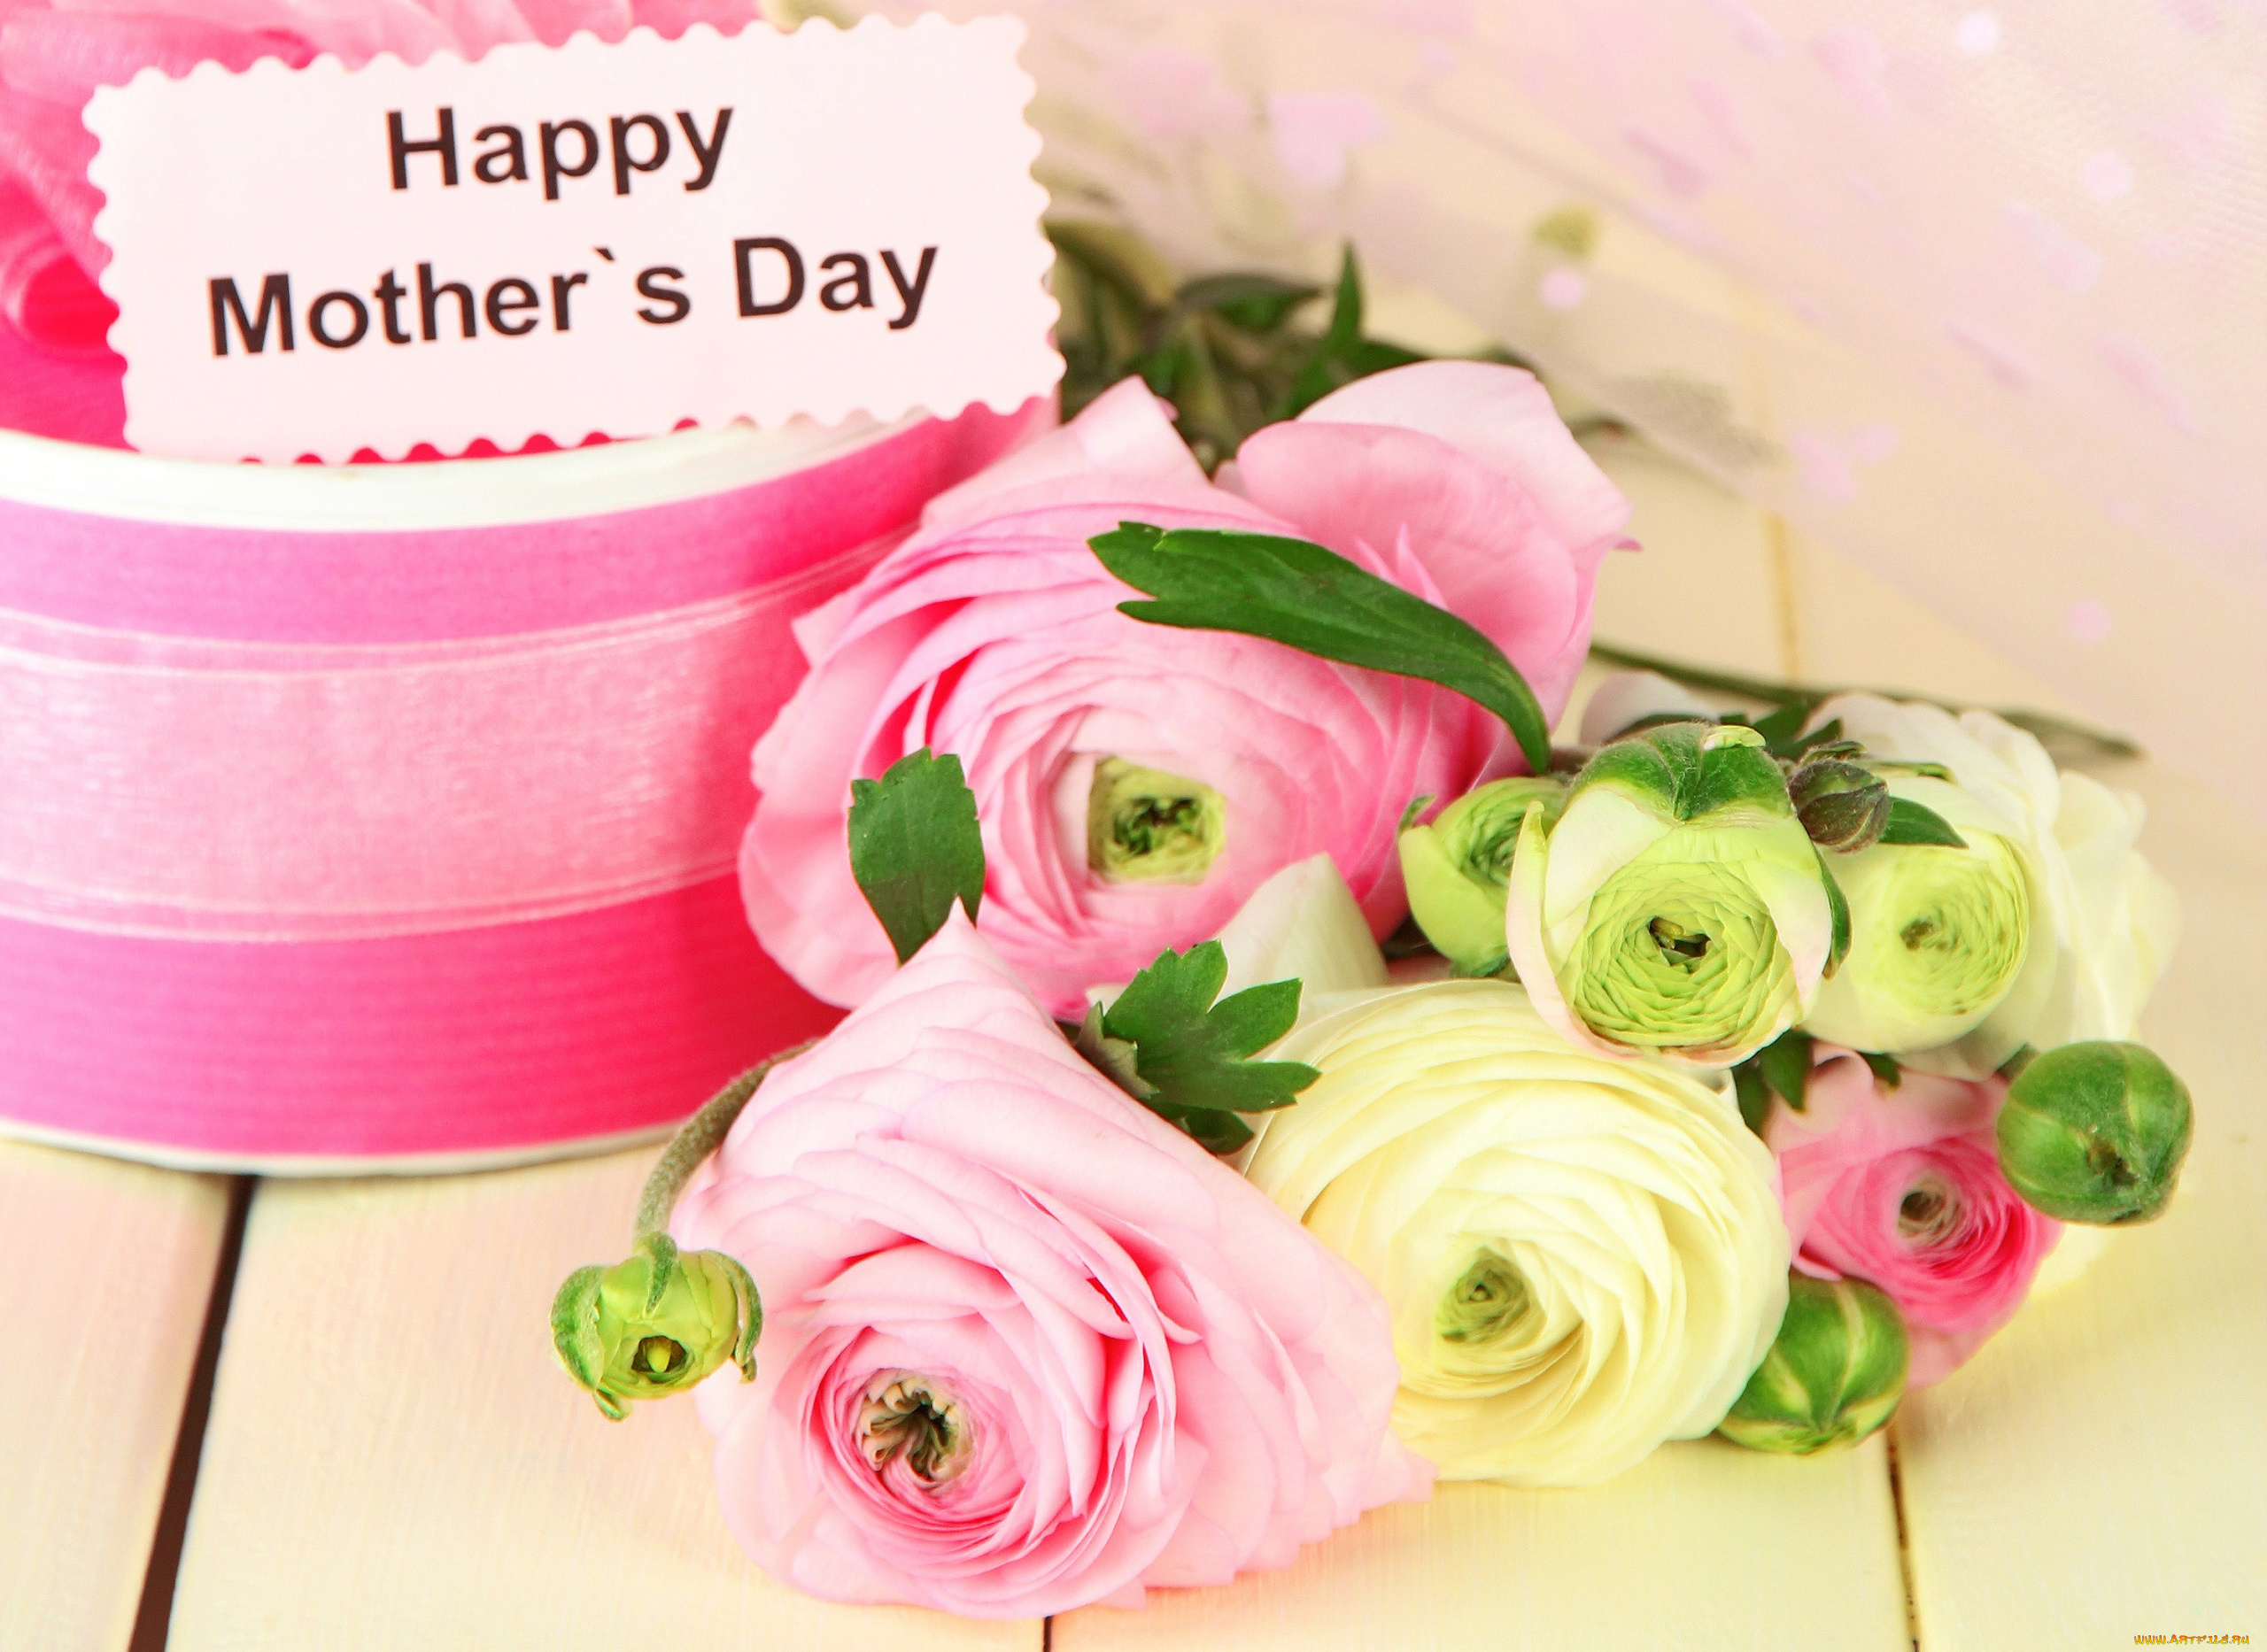 праздничные, международный, женский, день, -, 8, марта, mothers, day, красивый, подарок, flower, лютики, gift, 8, марта